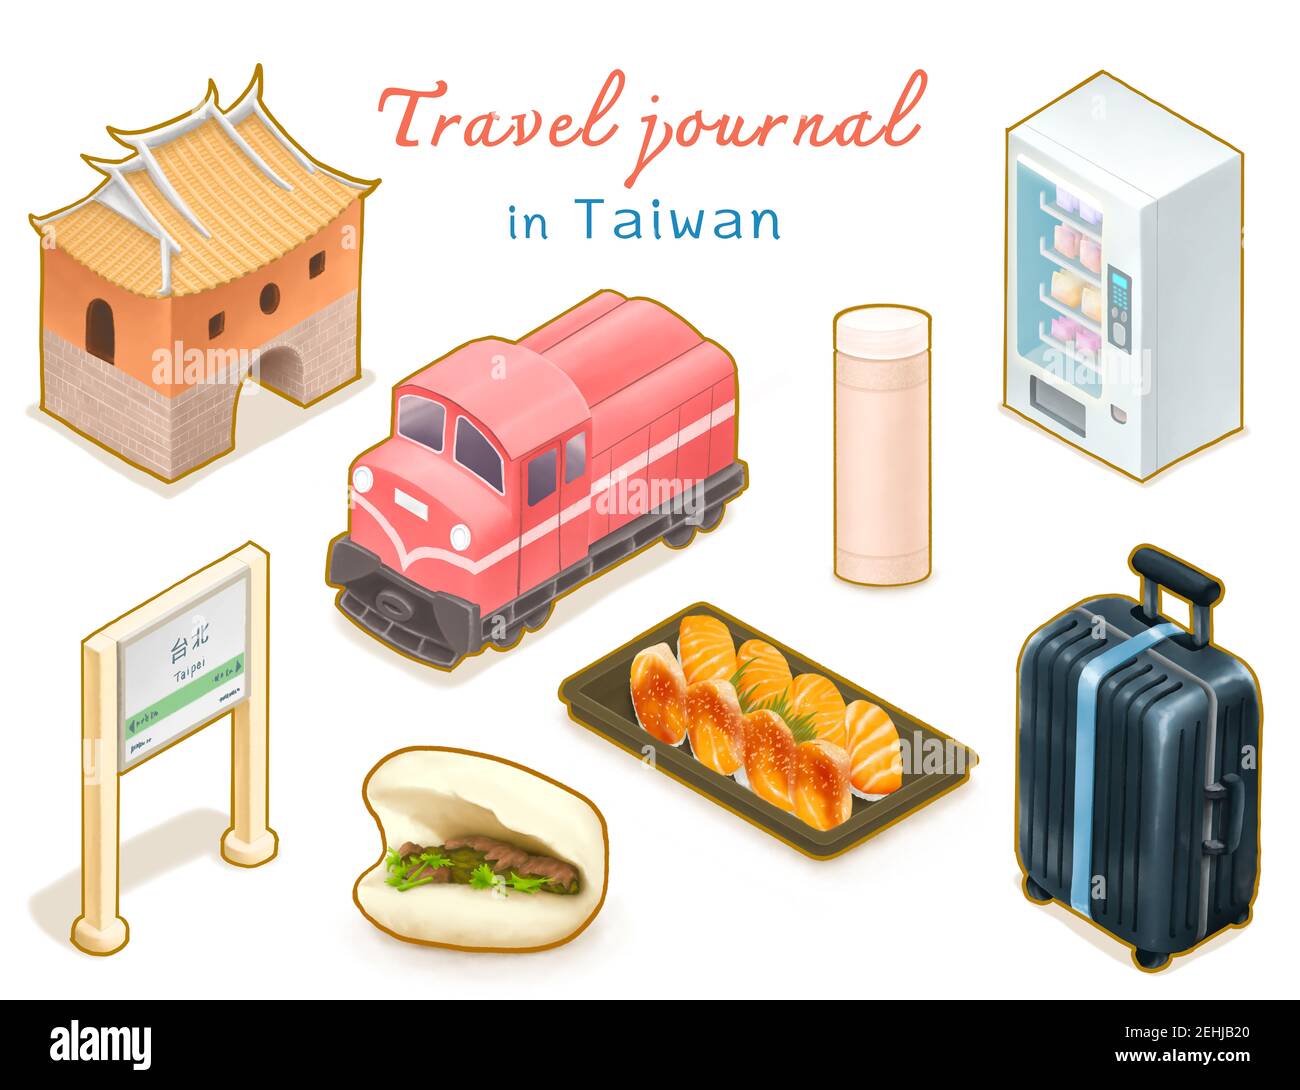 Travel Journal della collezione Taiwan, pittura digitale di Gua bao, distributore automatico, sushi di salmone, ferrovia di Alishan, bagagli, La porta nord isometrica ca Foto Stock